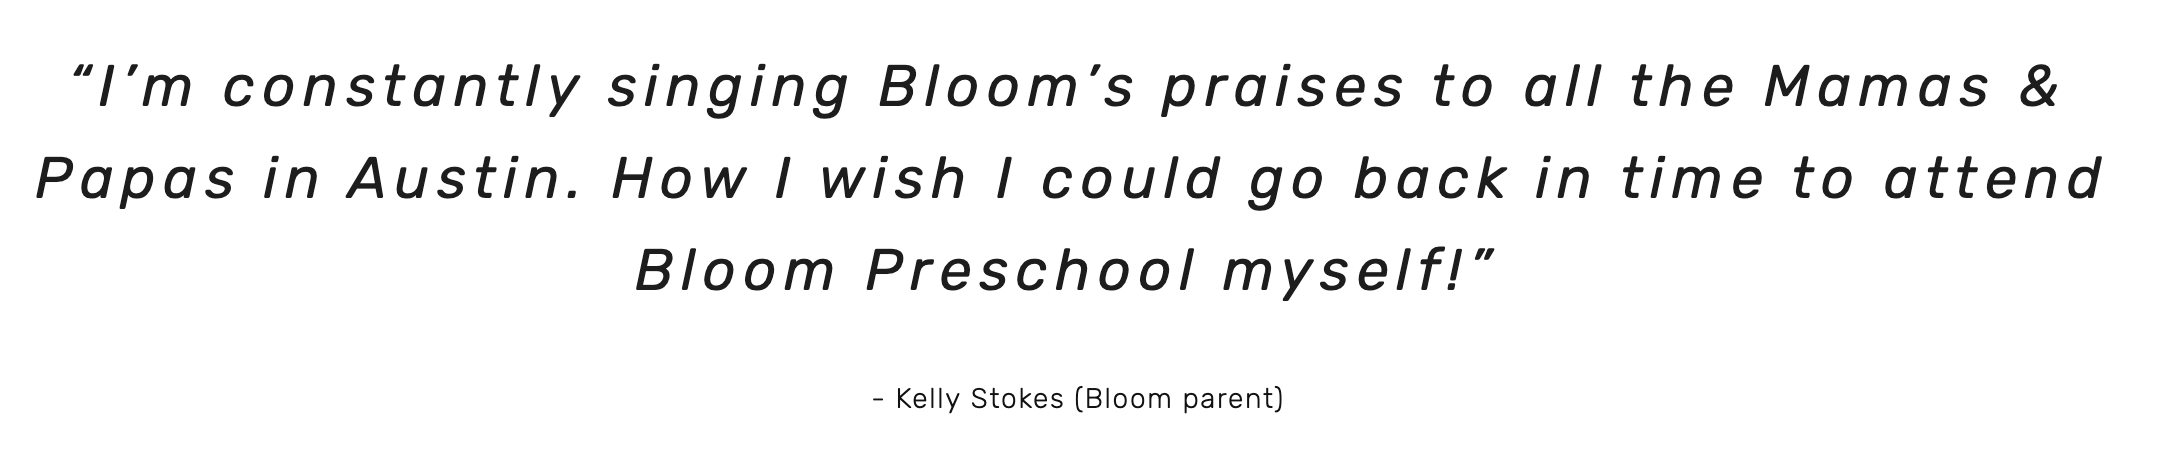 bloom preschool testimonial .png